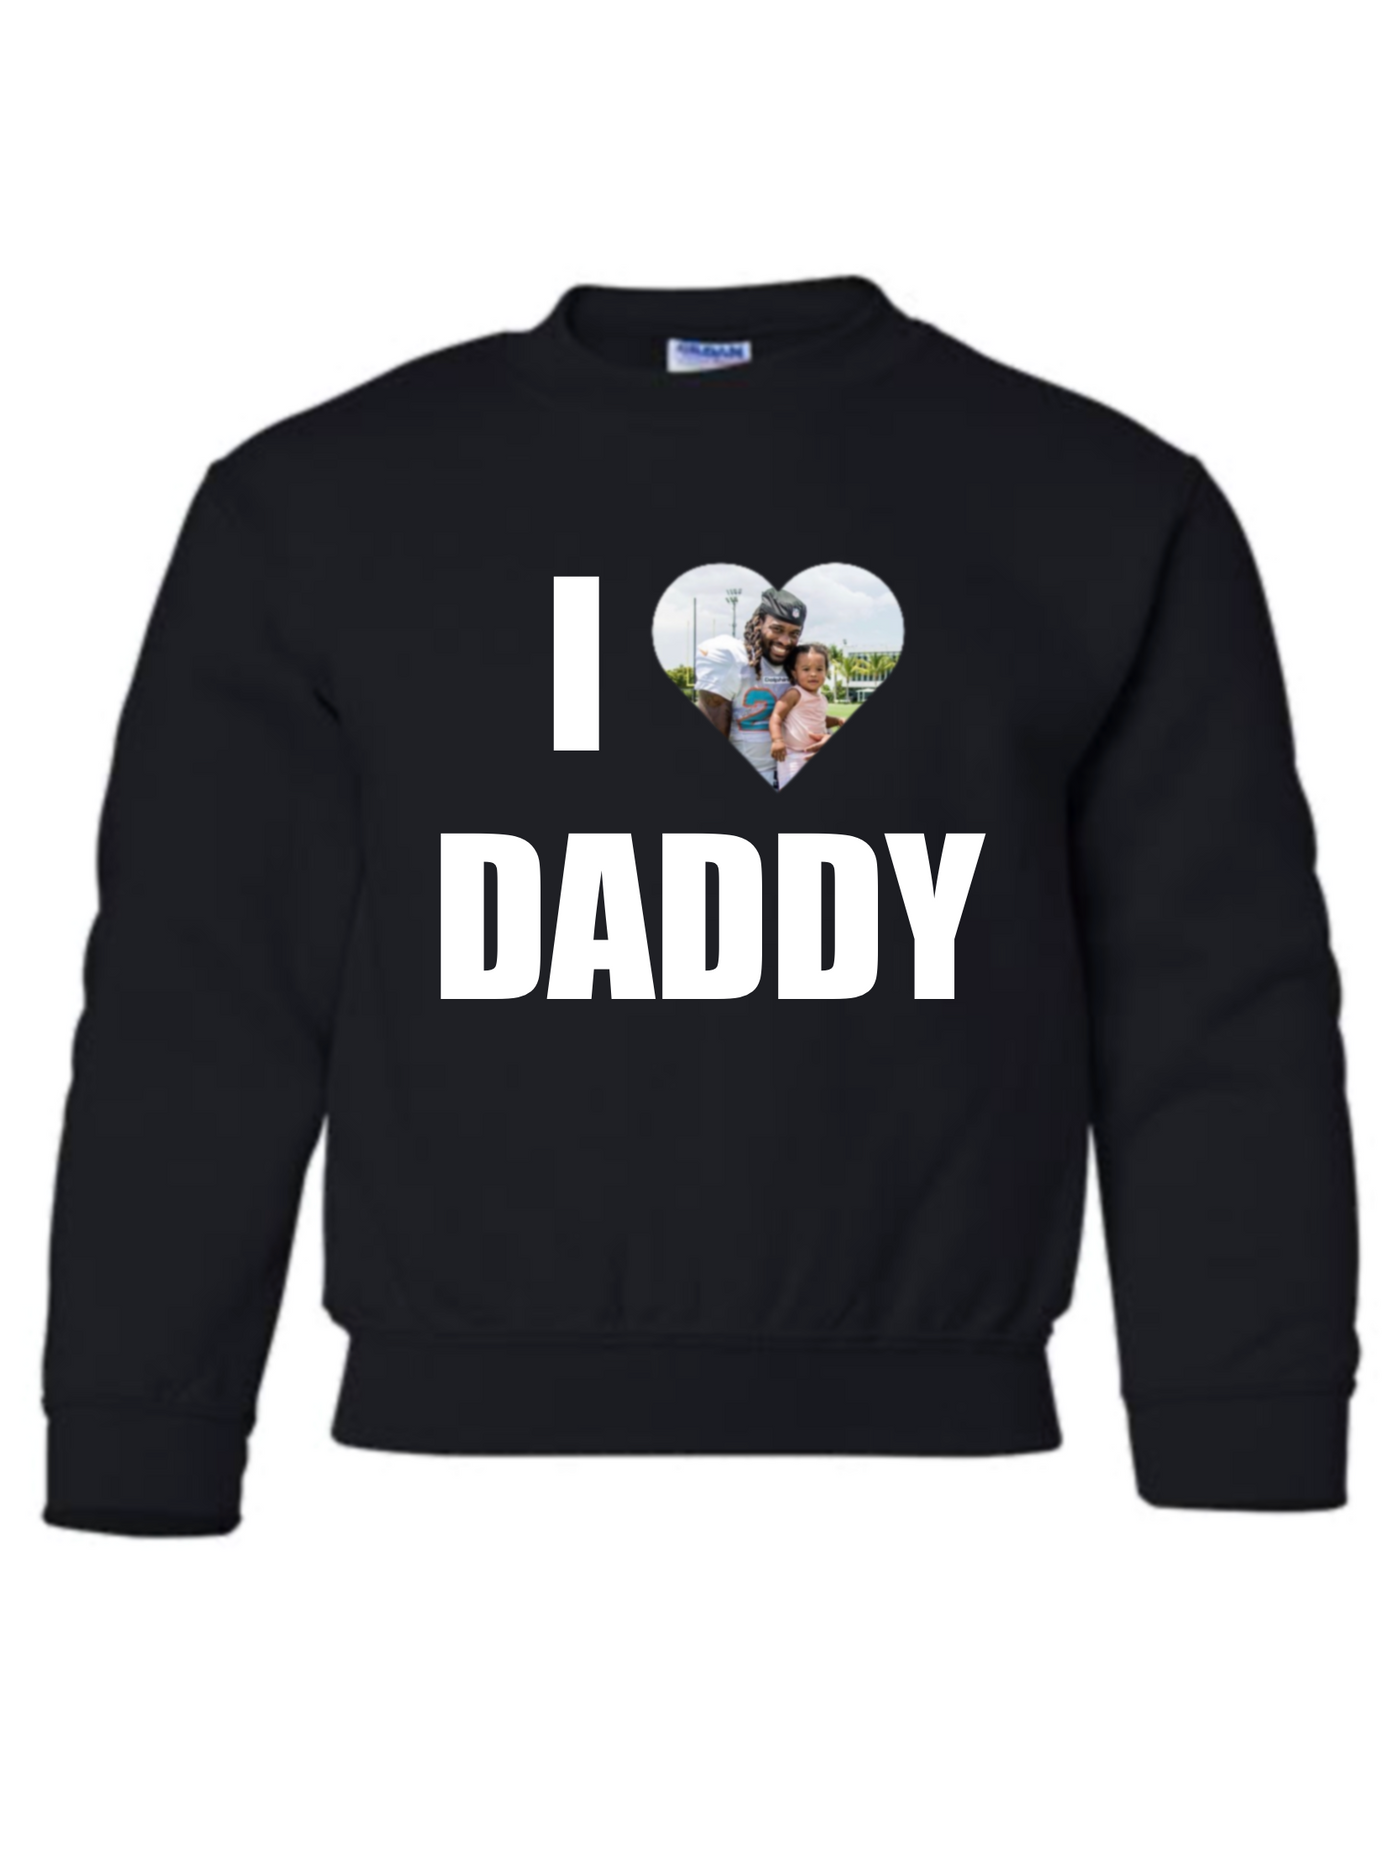 Daddy's #1 Fan | YOUTH